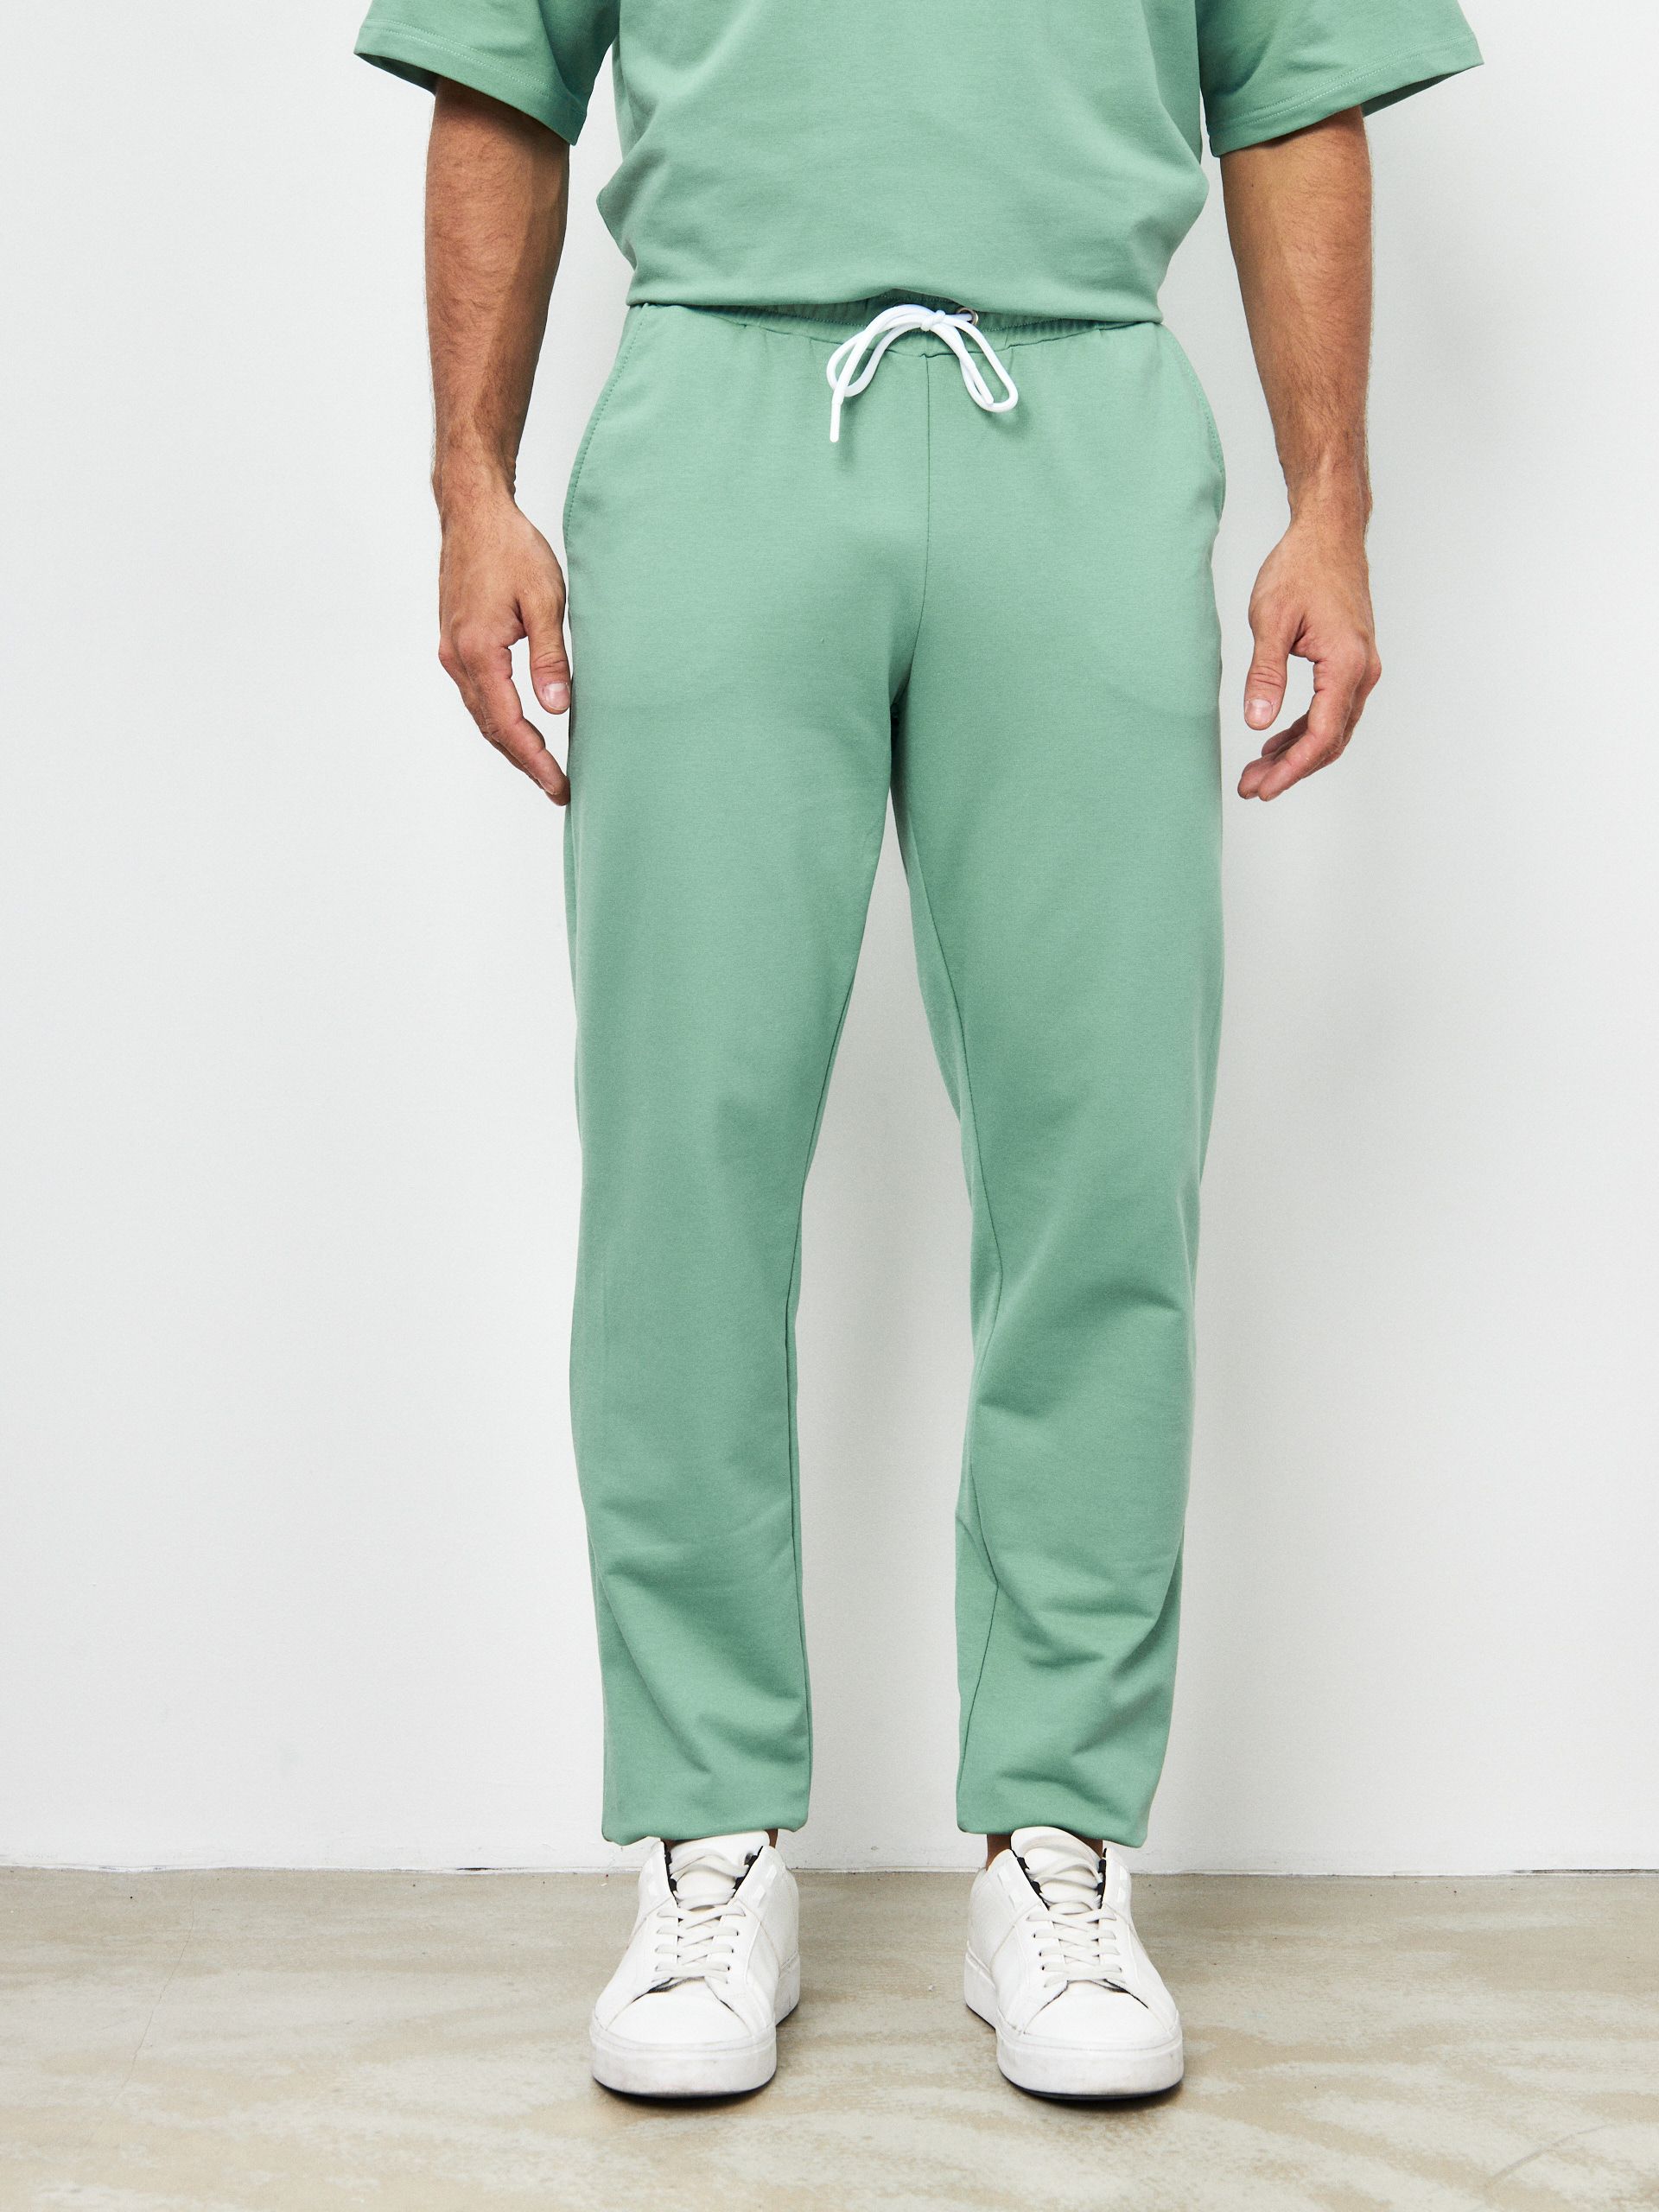 Спортивные брюки мужские MOM №1 MOM-88-3170 зеленые 44 RU